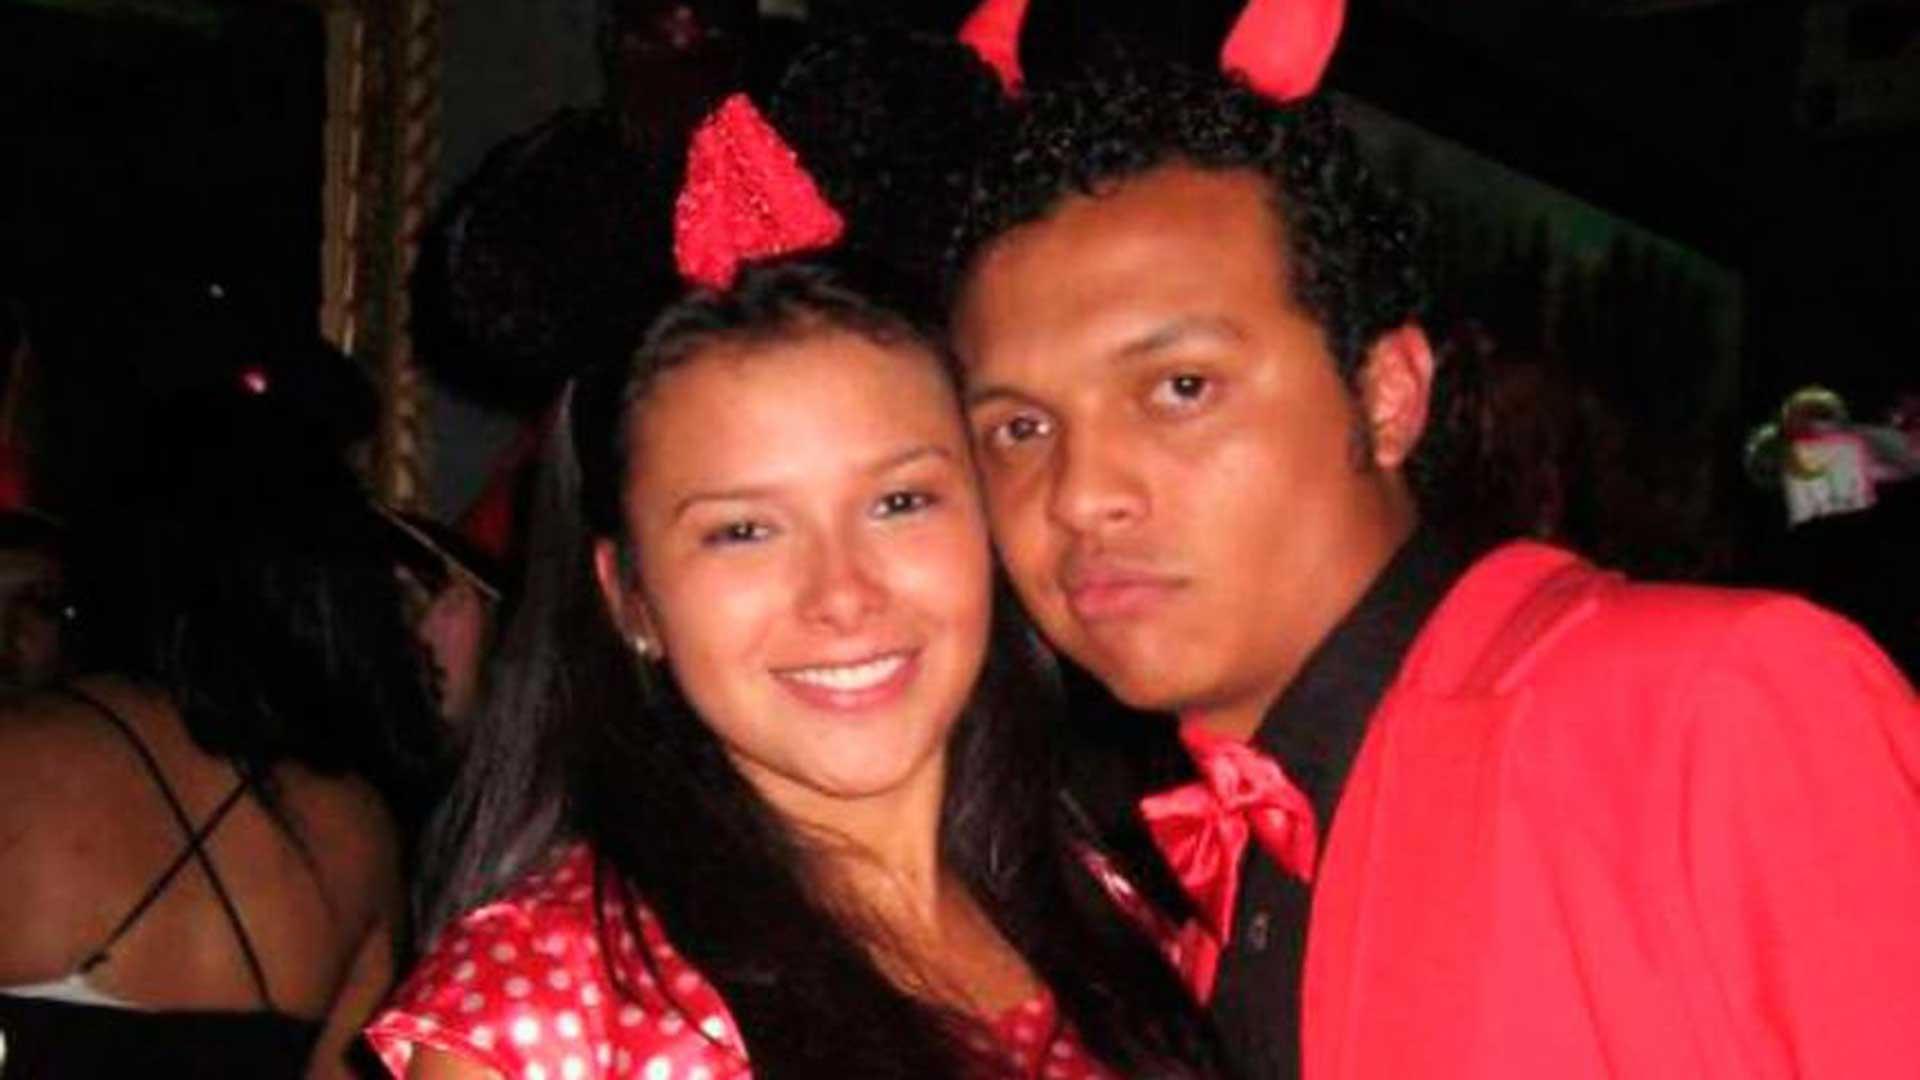 El presunto joven asesinado de 20 años, Luis Andrés Colmenares, junto a una de las implicadas, Laura Moreno.